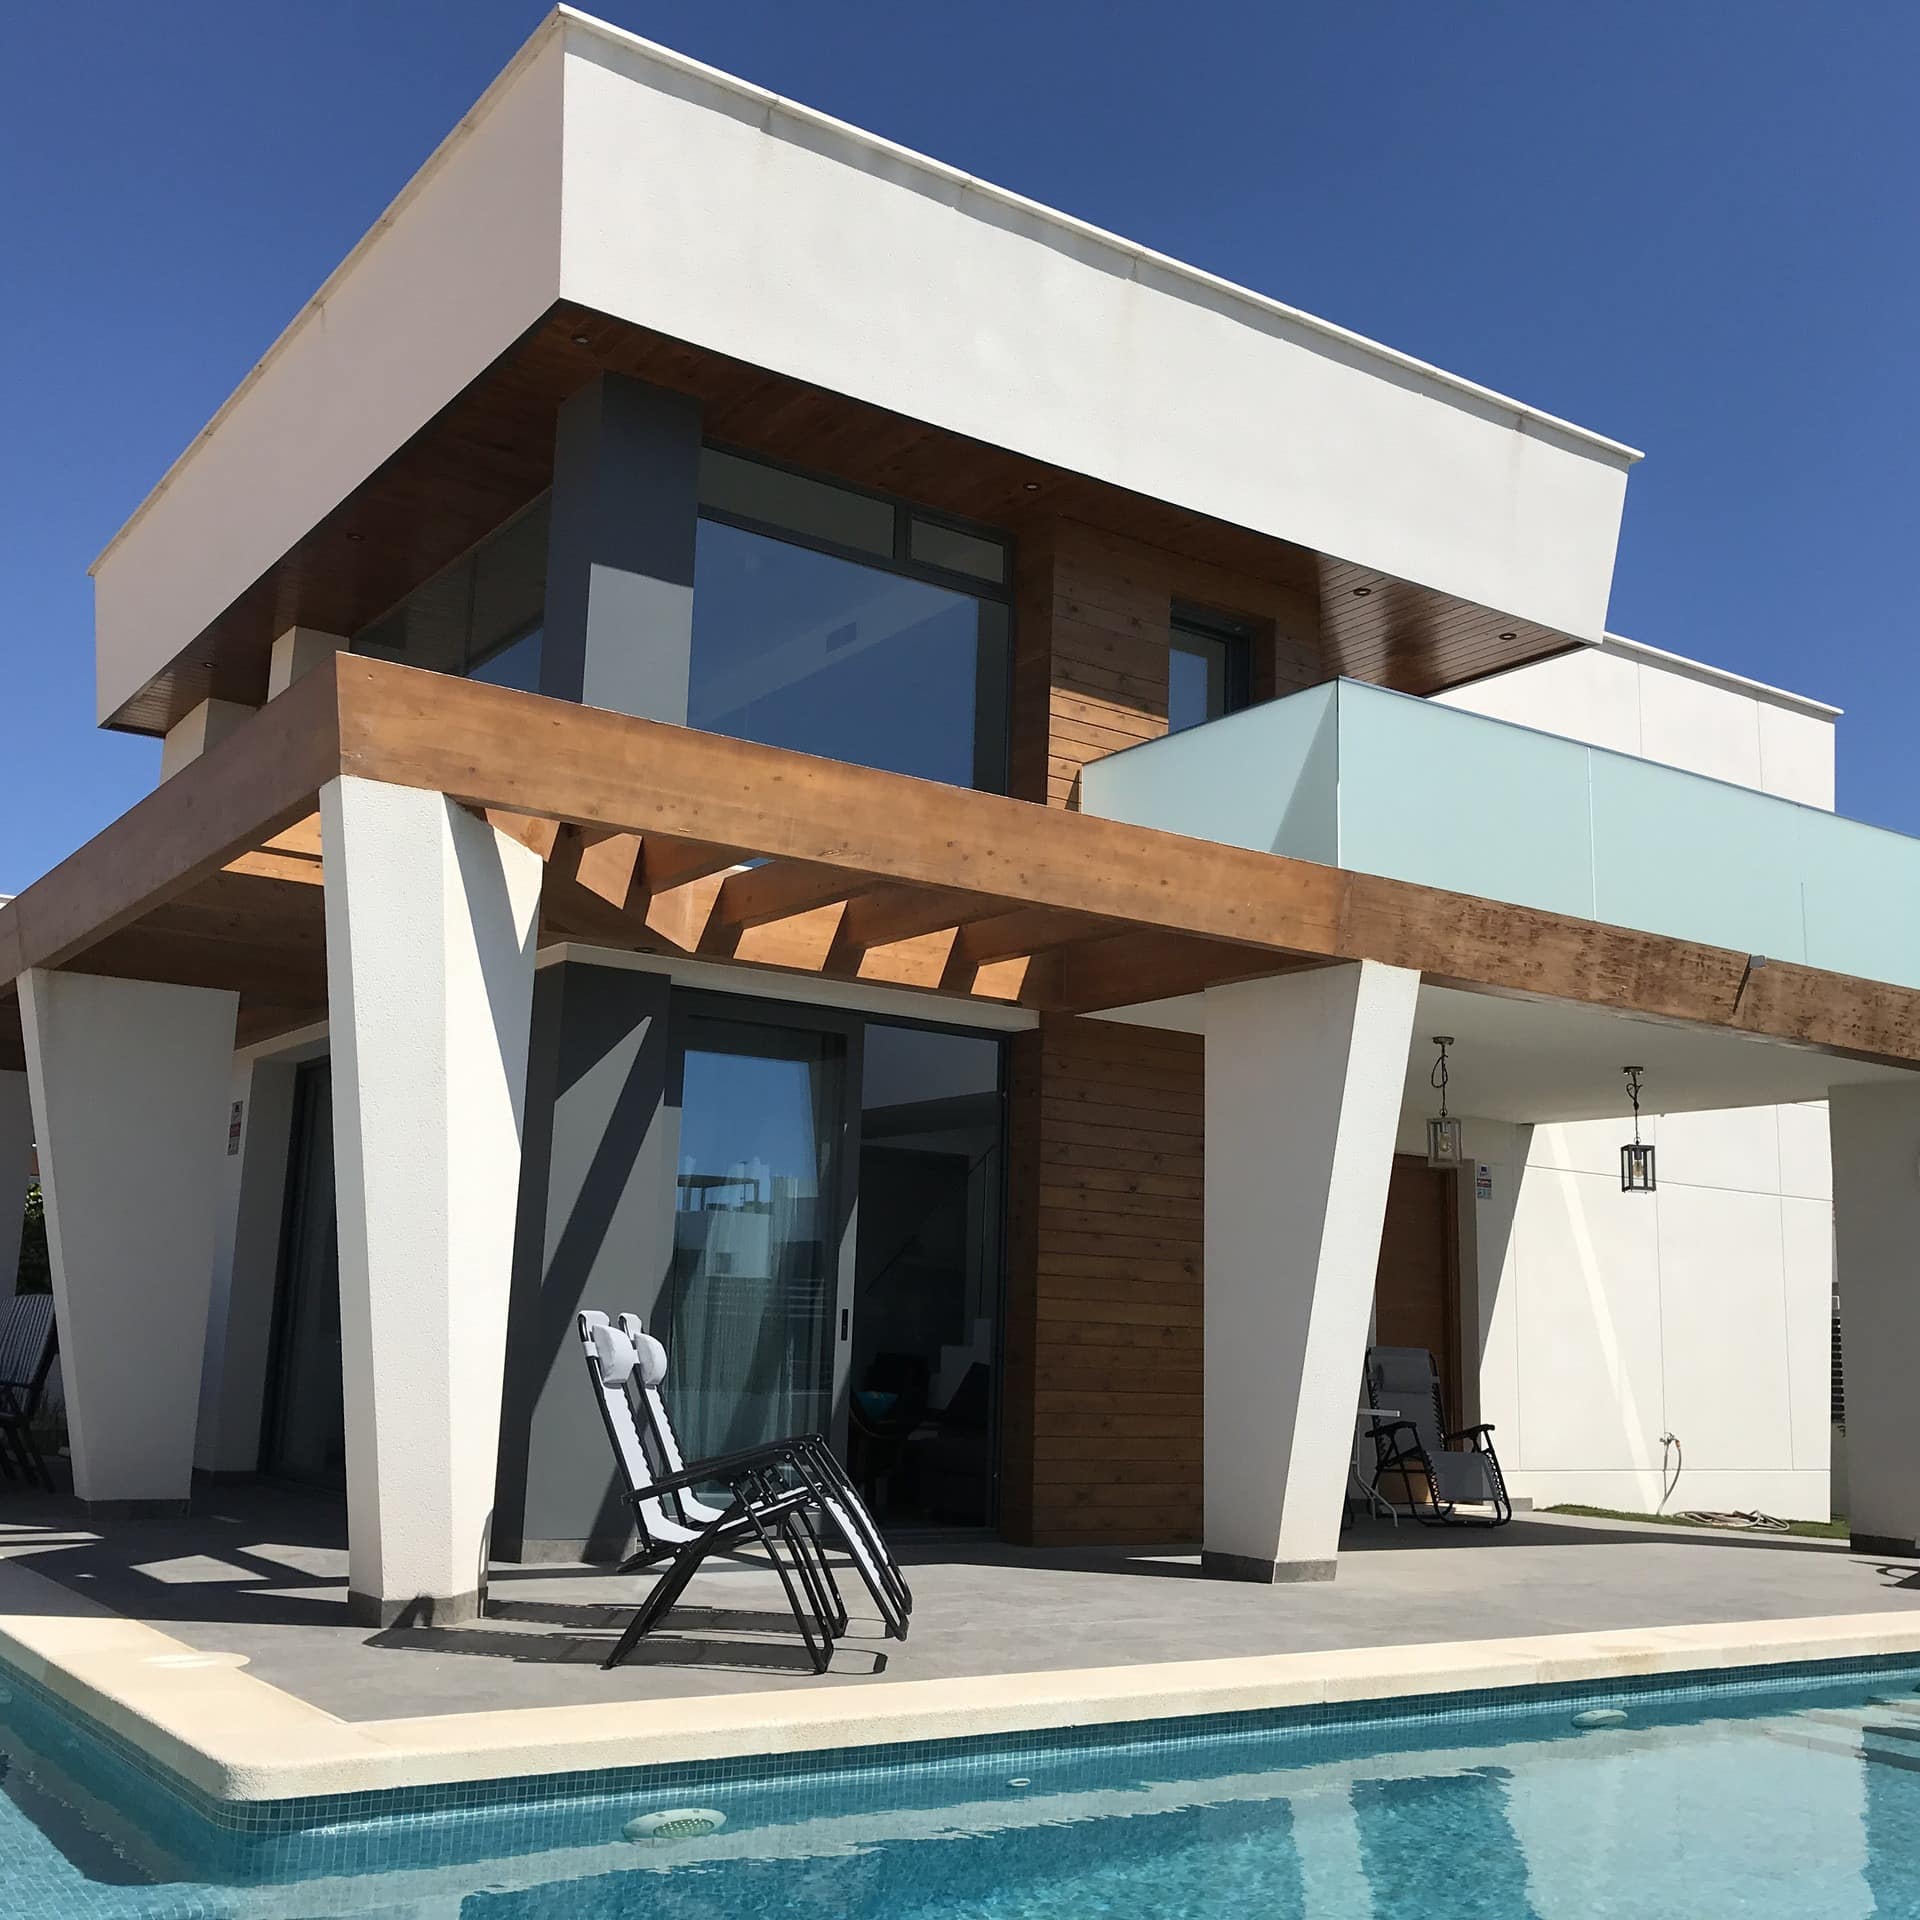 Alojamiento moderno con piscina y tumbonas para pasar un día de verano perfecto